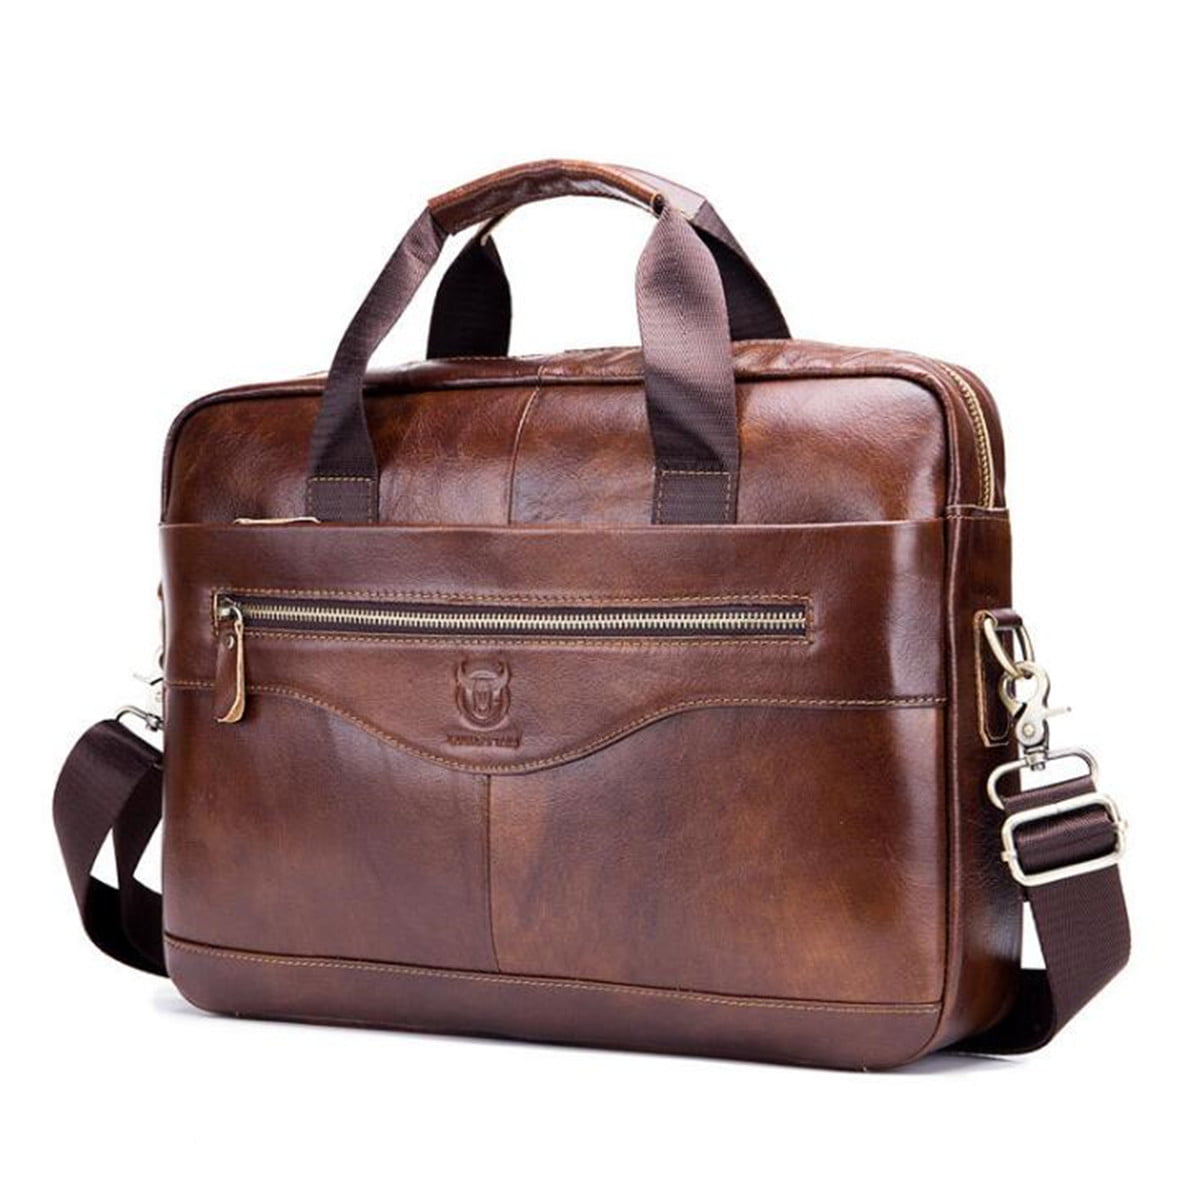 New Business Mens Black Leather Briefcase Bag Handbag Laptop Shoulder Bag